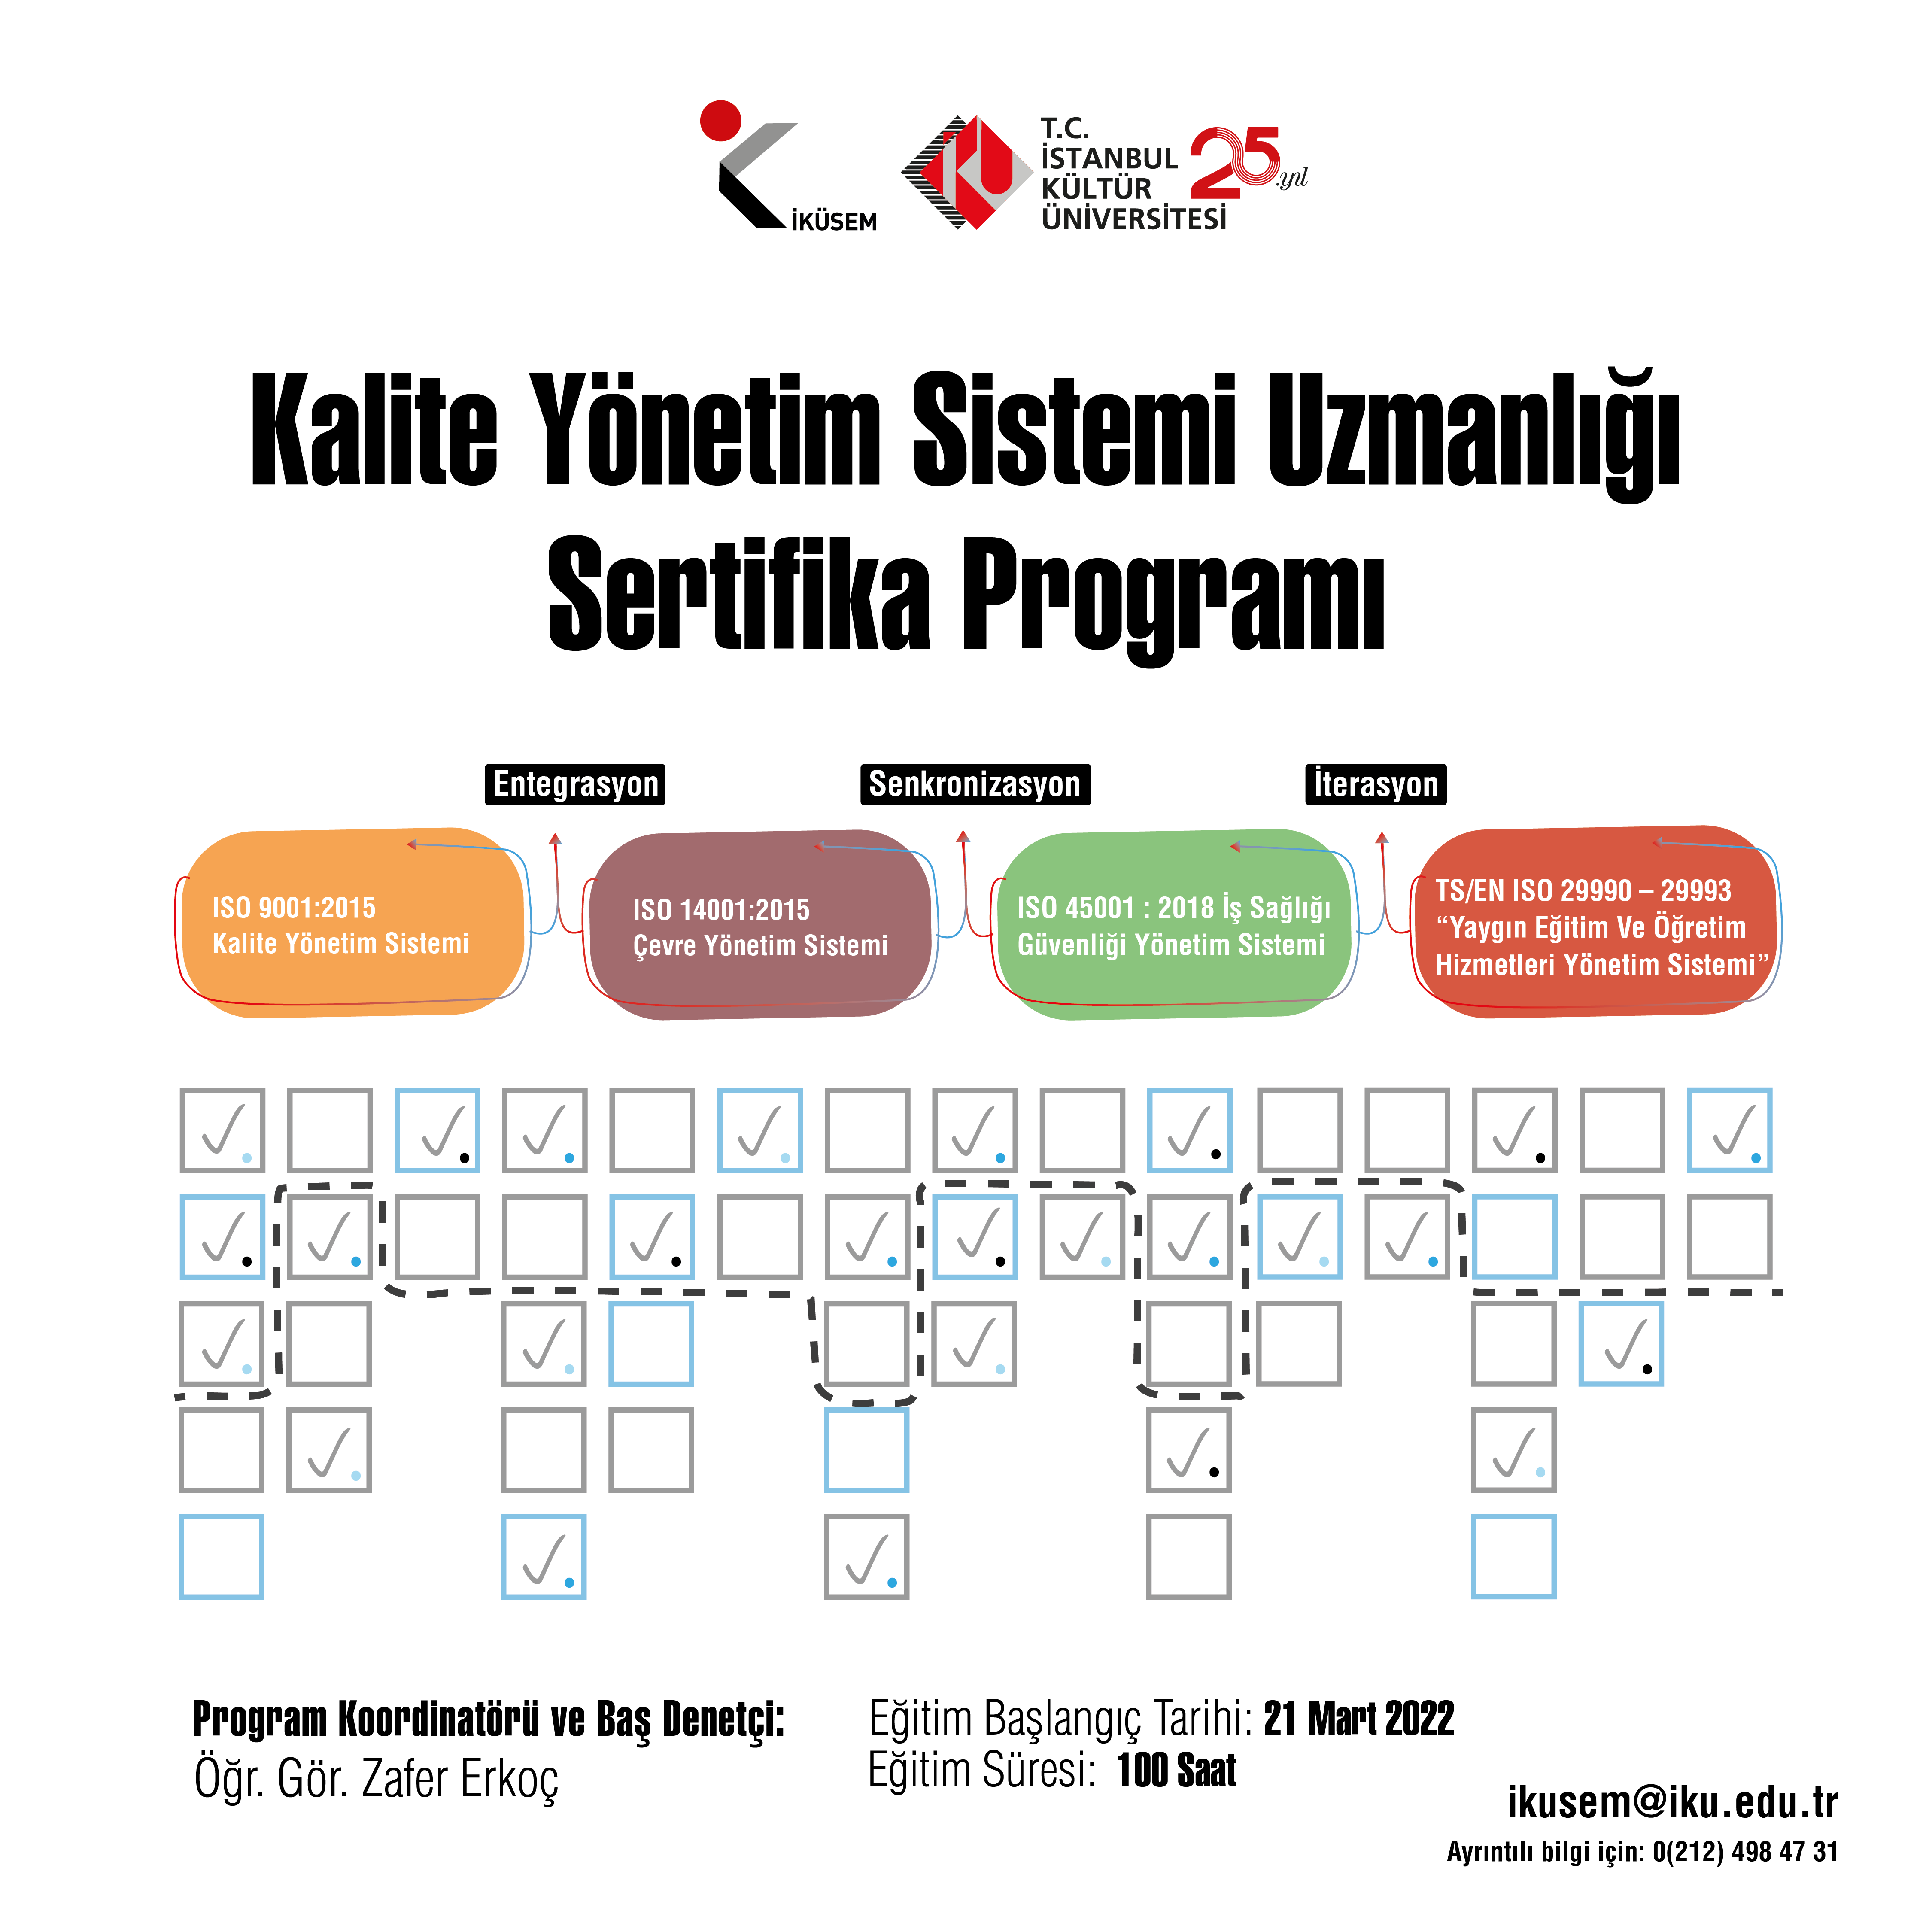 Kalite Yönetim Sistemi Uzmanlığı Sertifika Programı